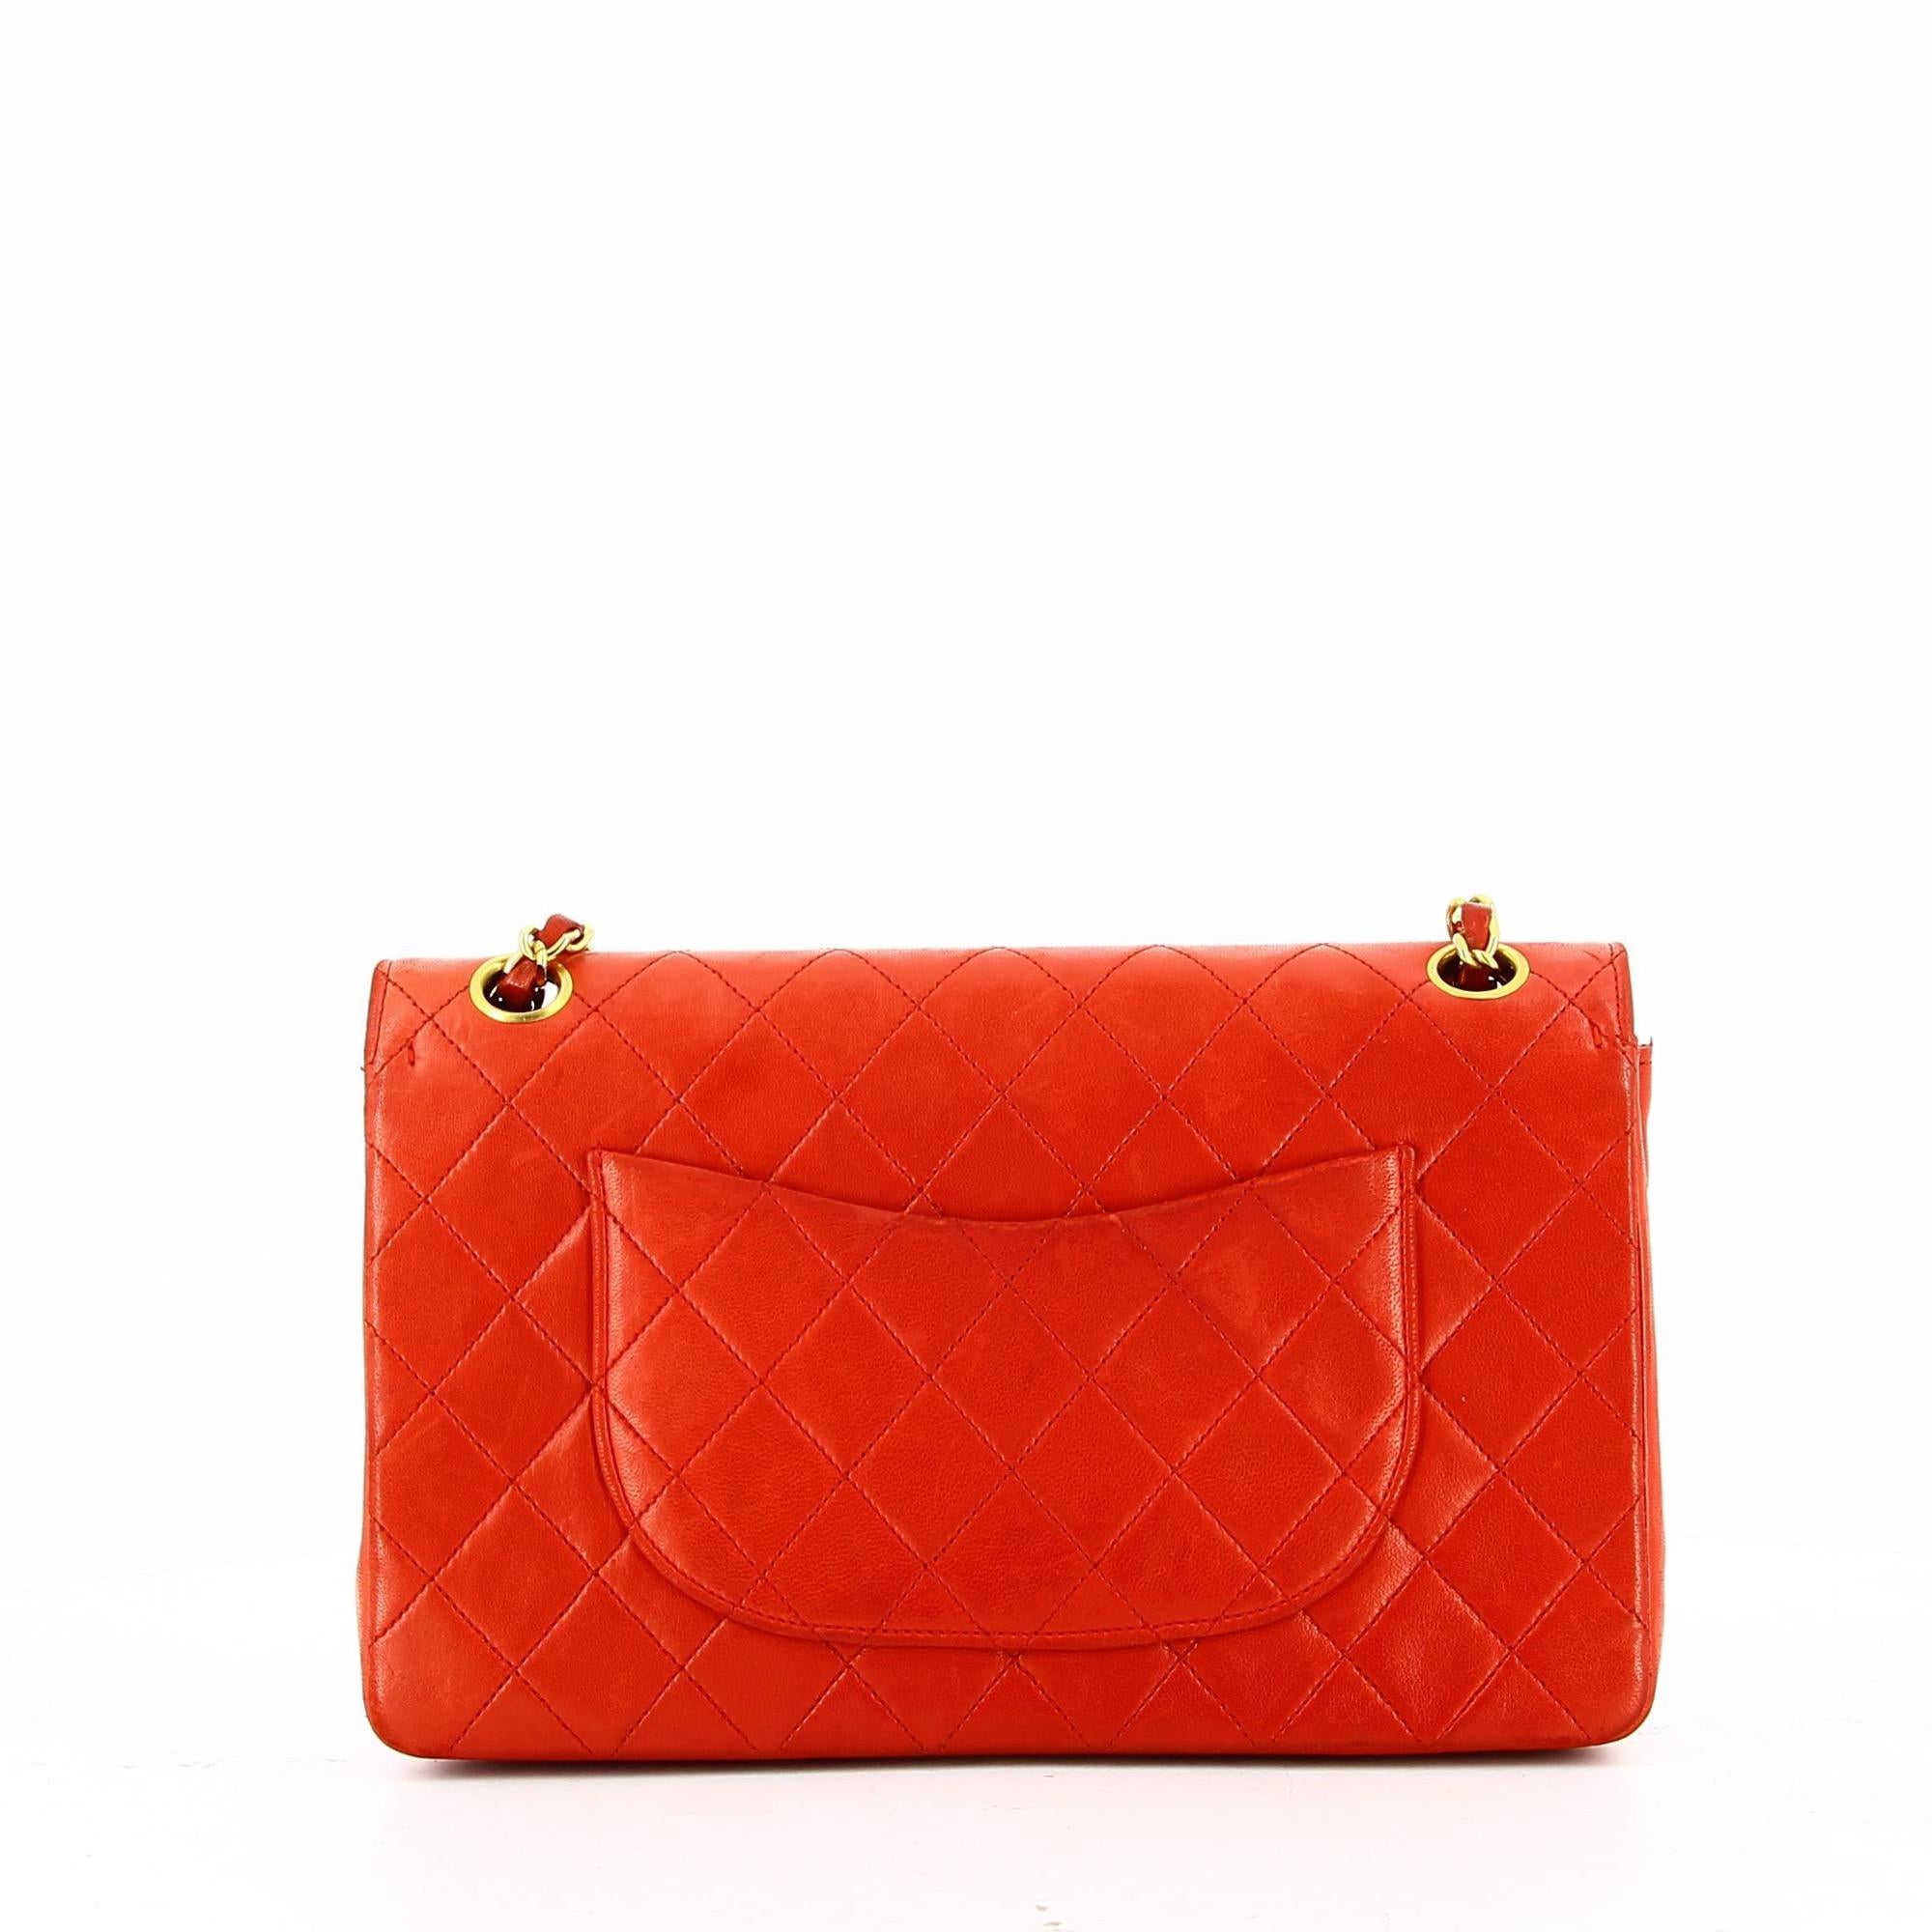 Women's or Men's Chanel Red Timeless Bag